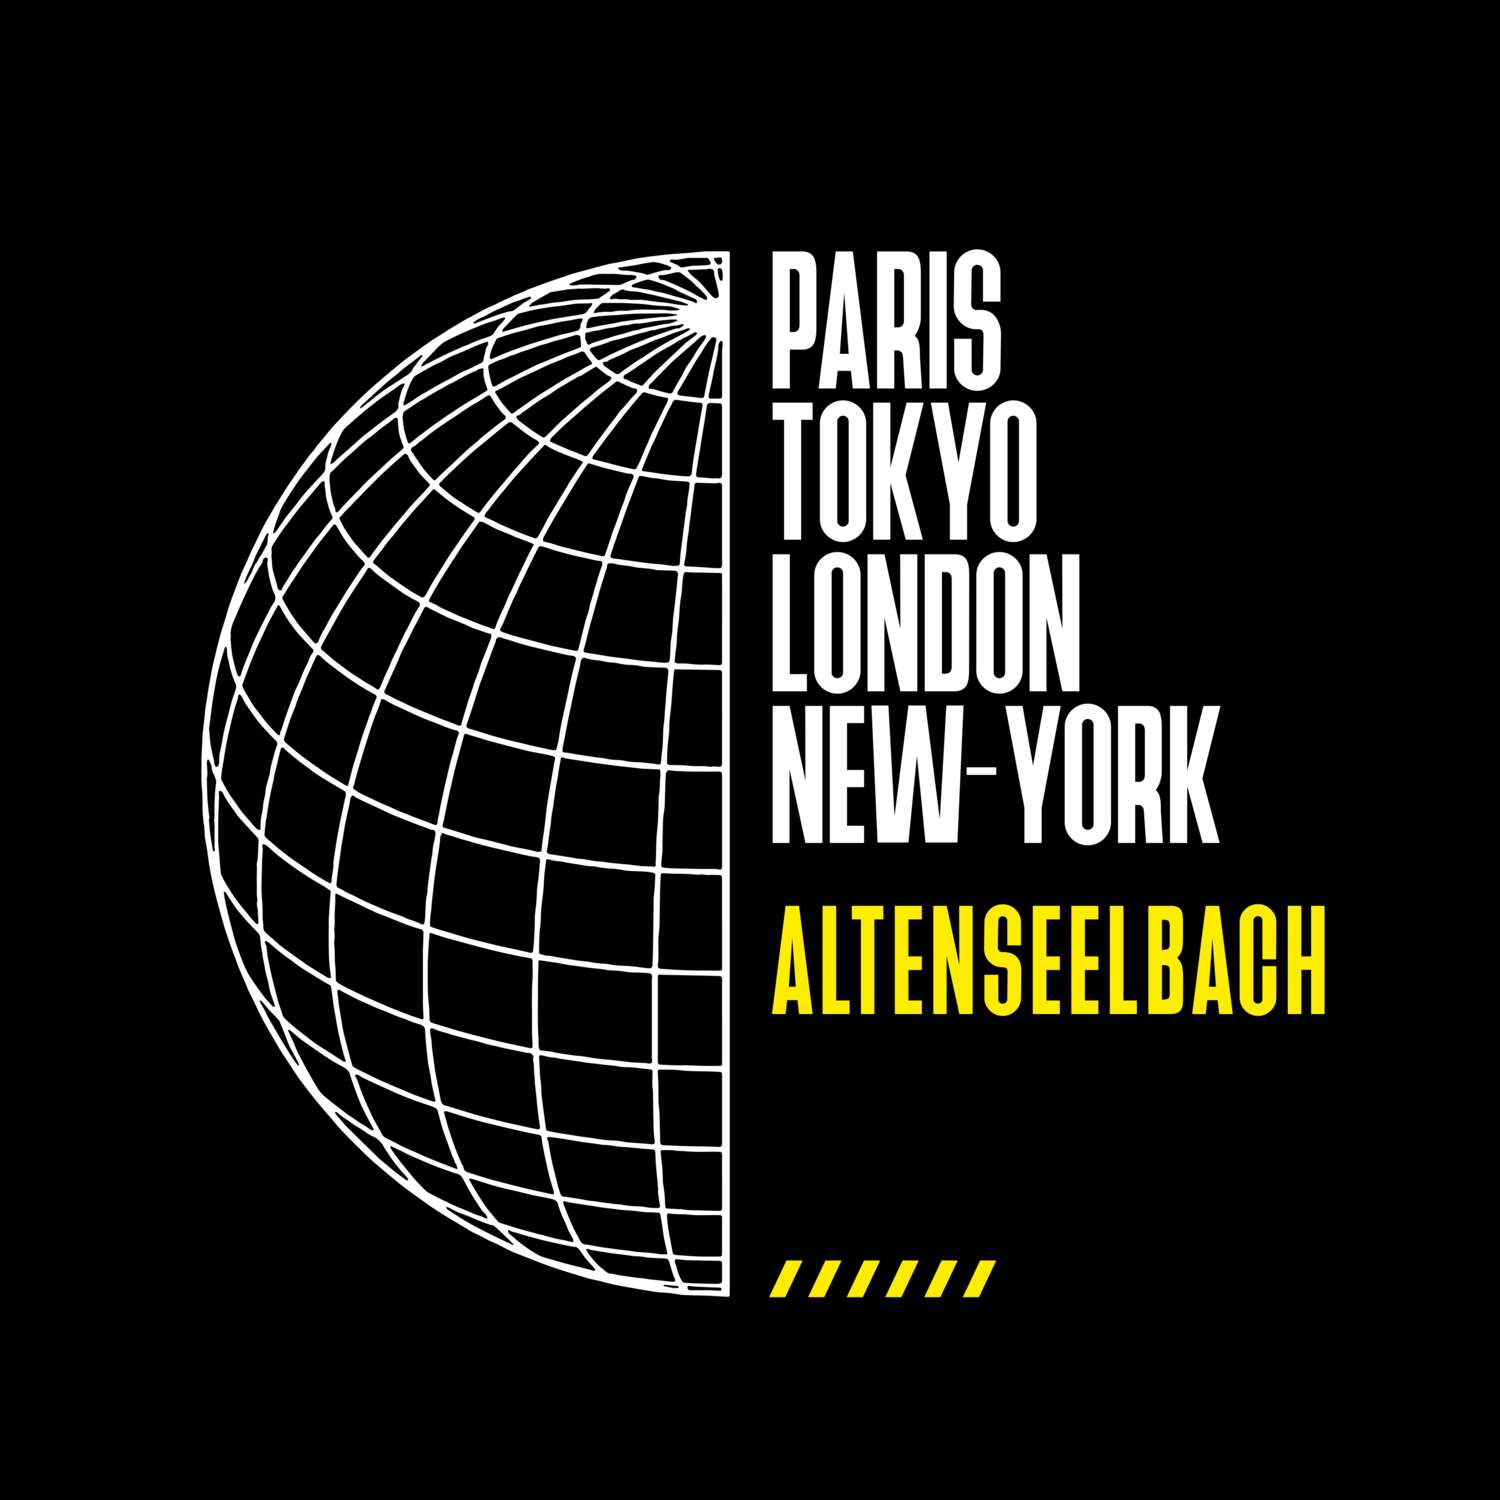 Altenseelbach T-Shirt »Paris Tokyo London«